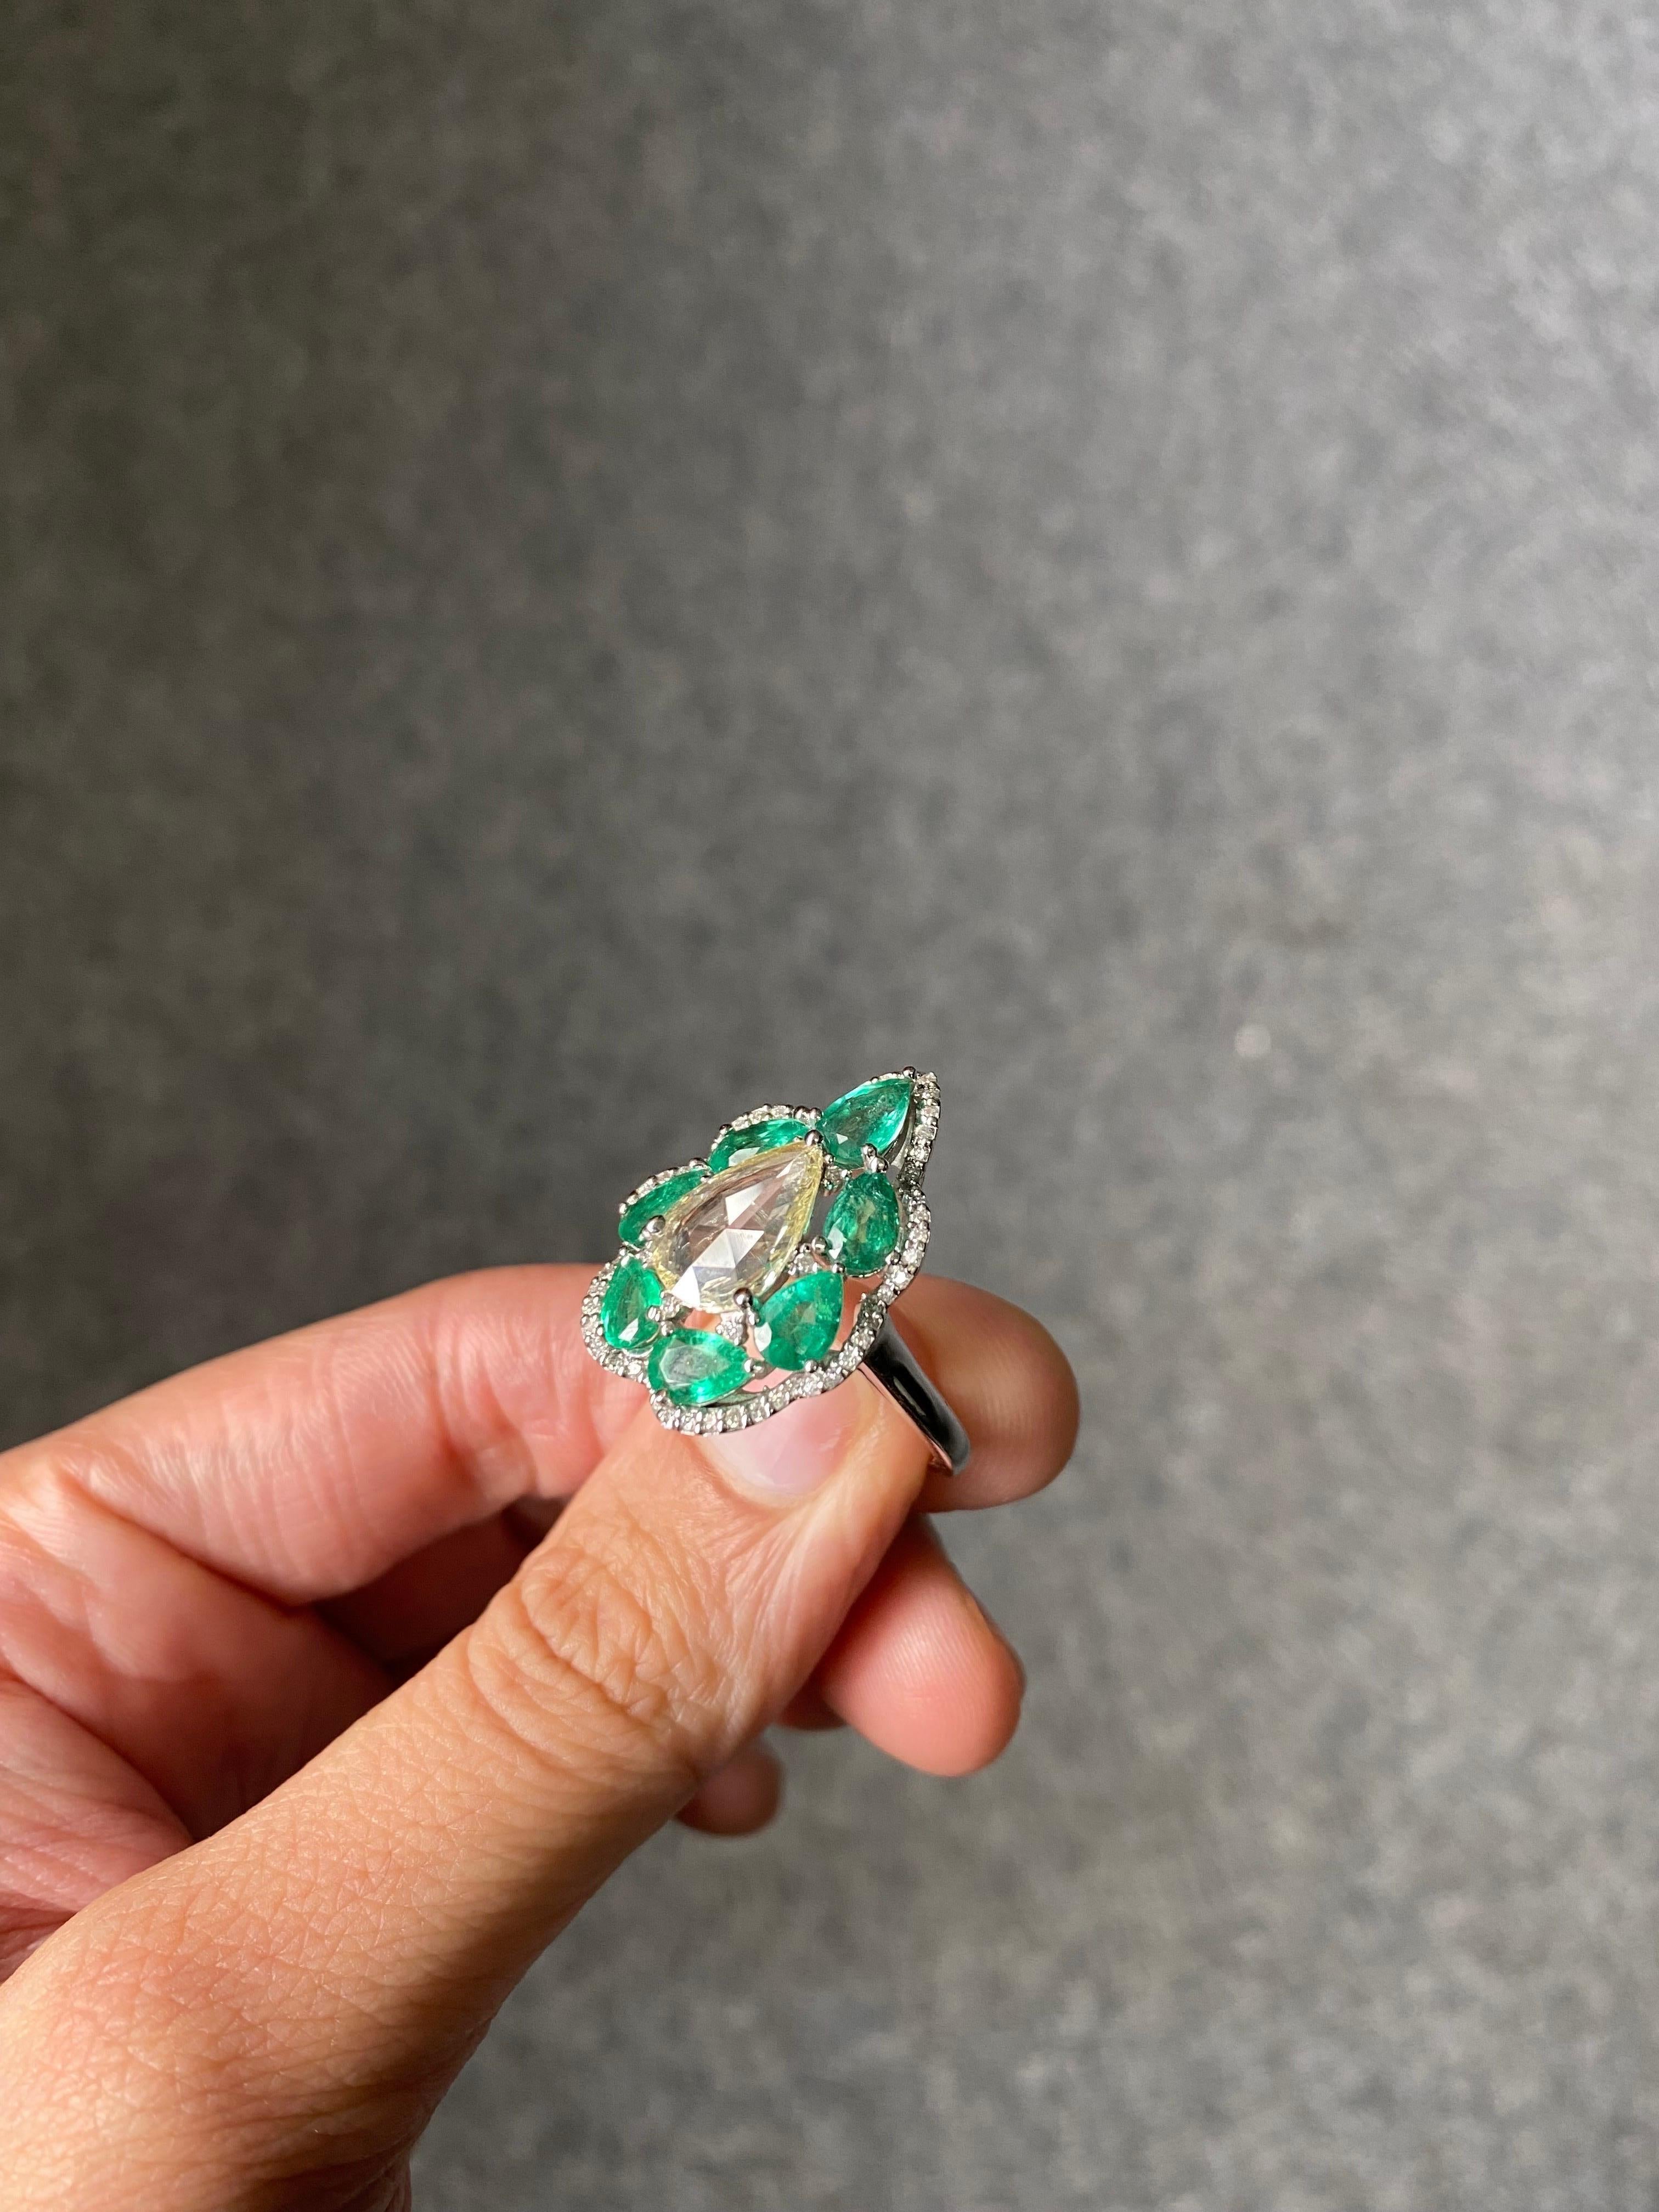 Ein atemberaubender, art-deco aussehender, birnenförmiger 0,86 Karat großer, augenreiner Diamant im Rosenschliff mit einem 2,66 Karat großen, birnenförmigen sambischen Smaragd mit großem Glanz und lebhafter grüner Farbe. Die Edelsteine sind in